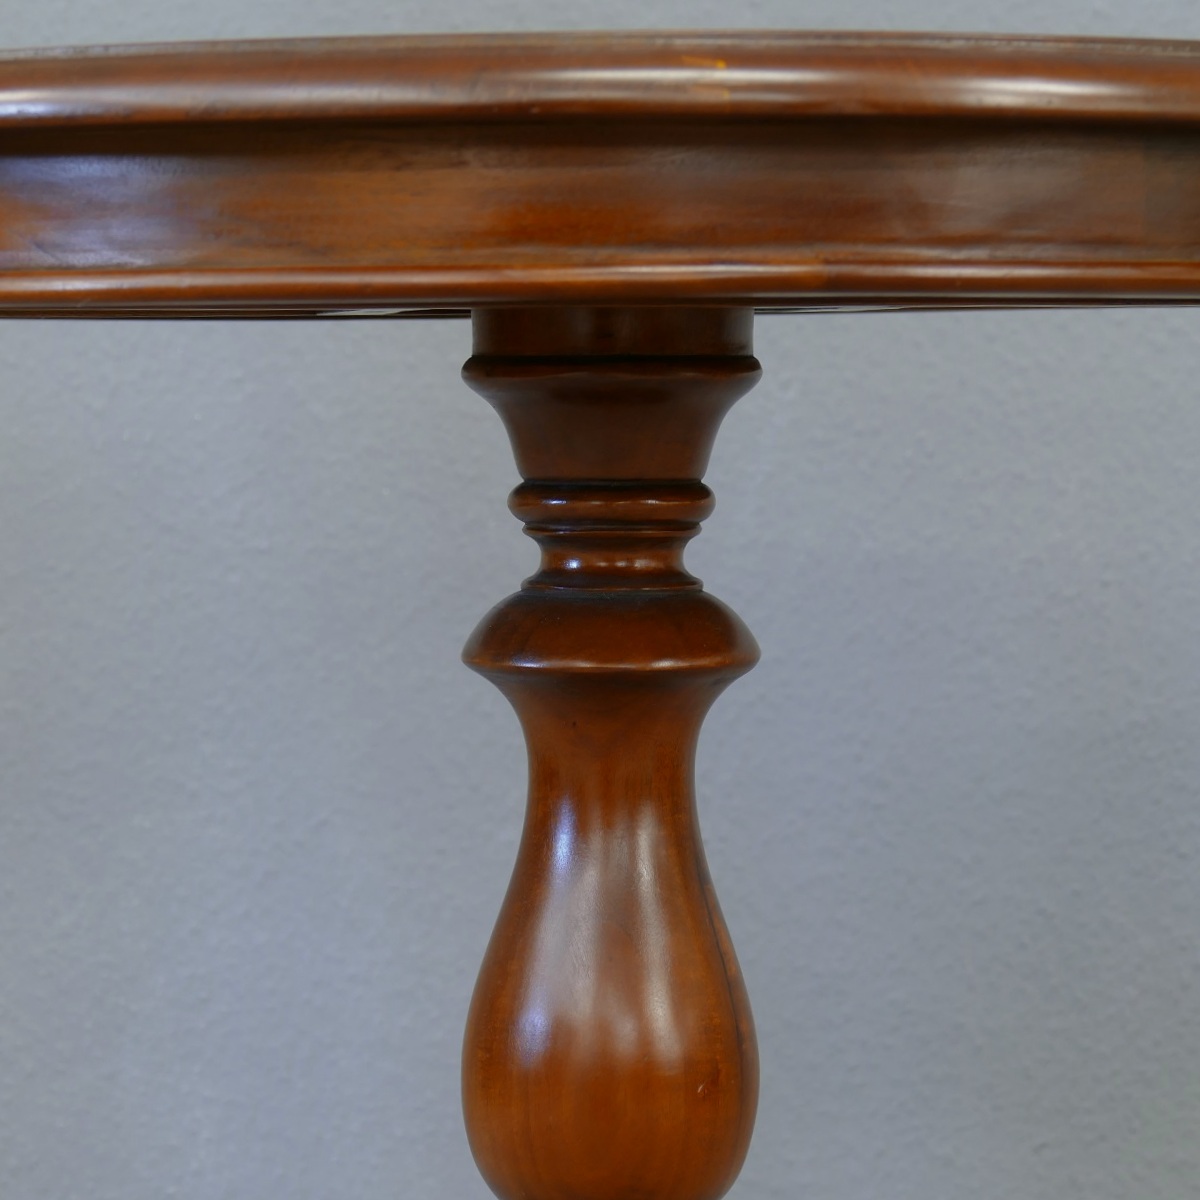 Tisch Teetisch Beistelltisch Wine Table Mahagoni Farbe Holz hellbraun Walnuss